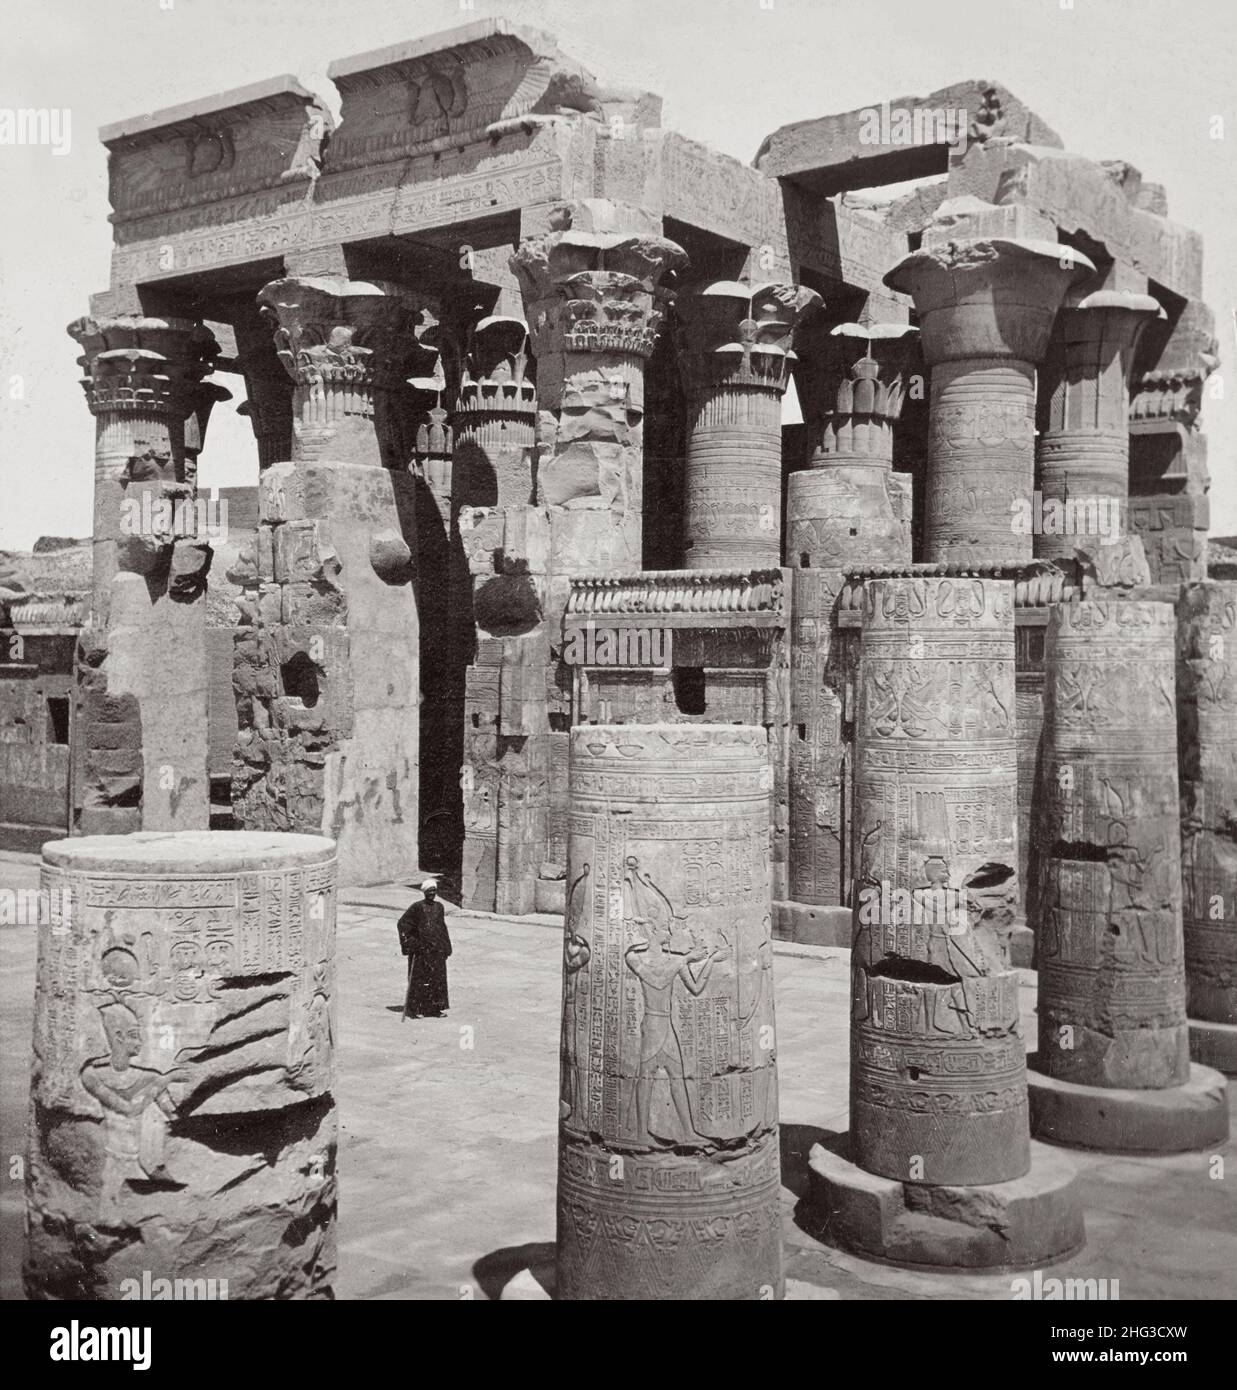 Foto vintage del Templo de Kom Ombo, Egipto. 1899 Foto de stock